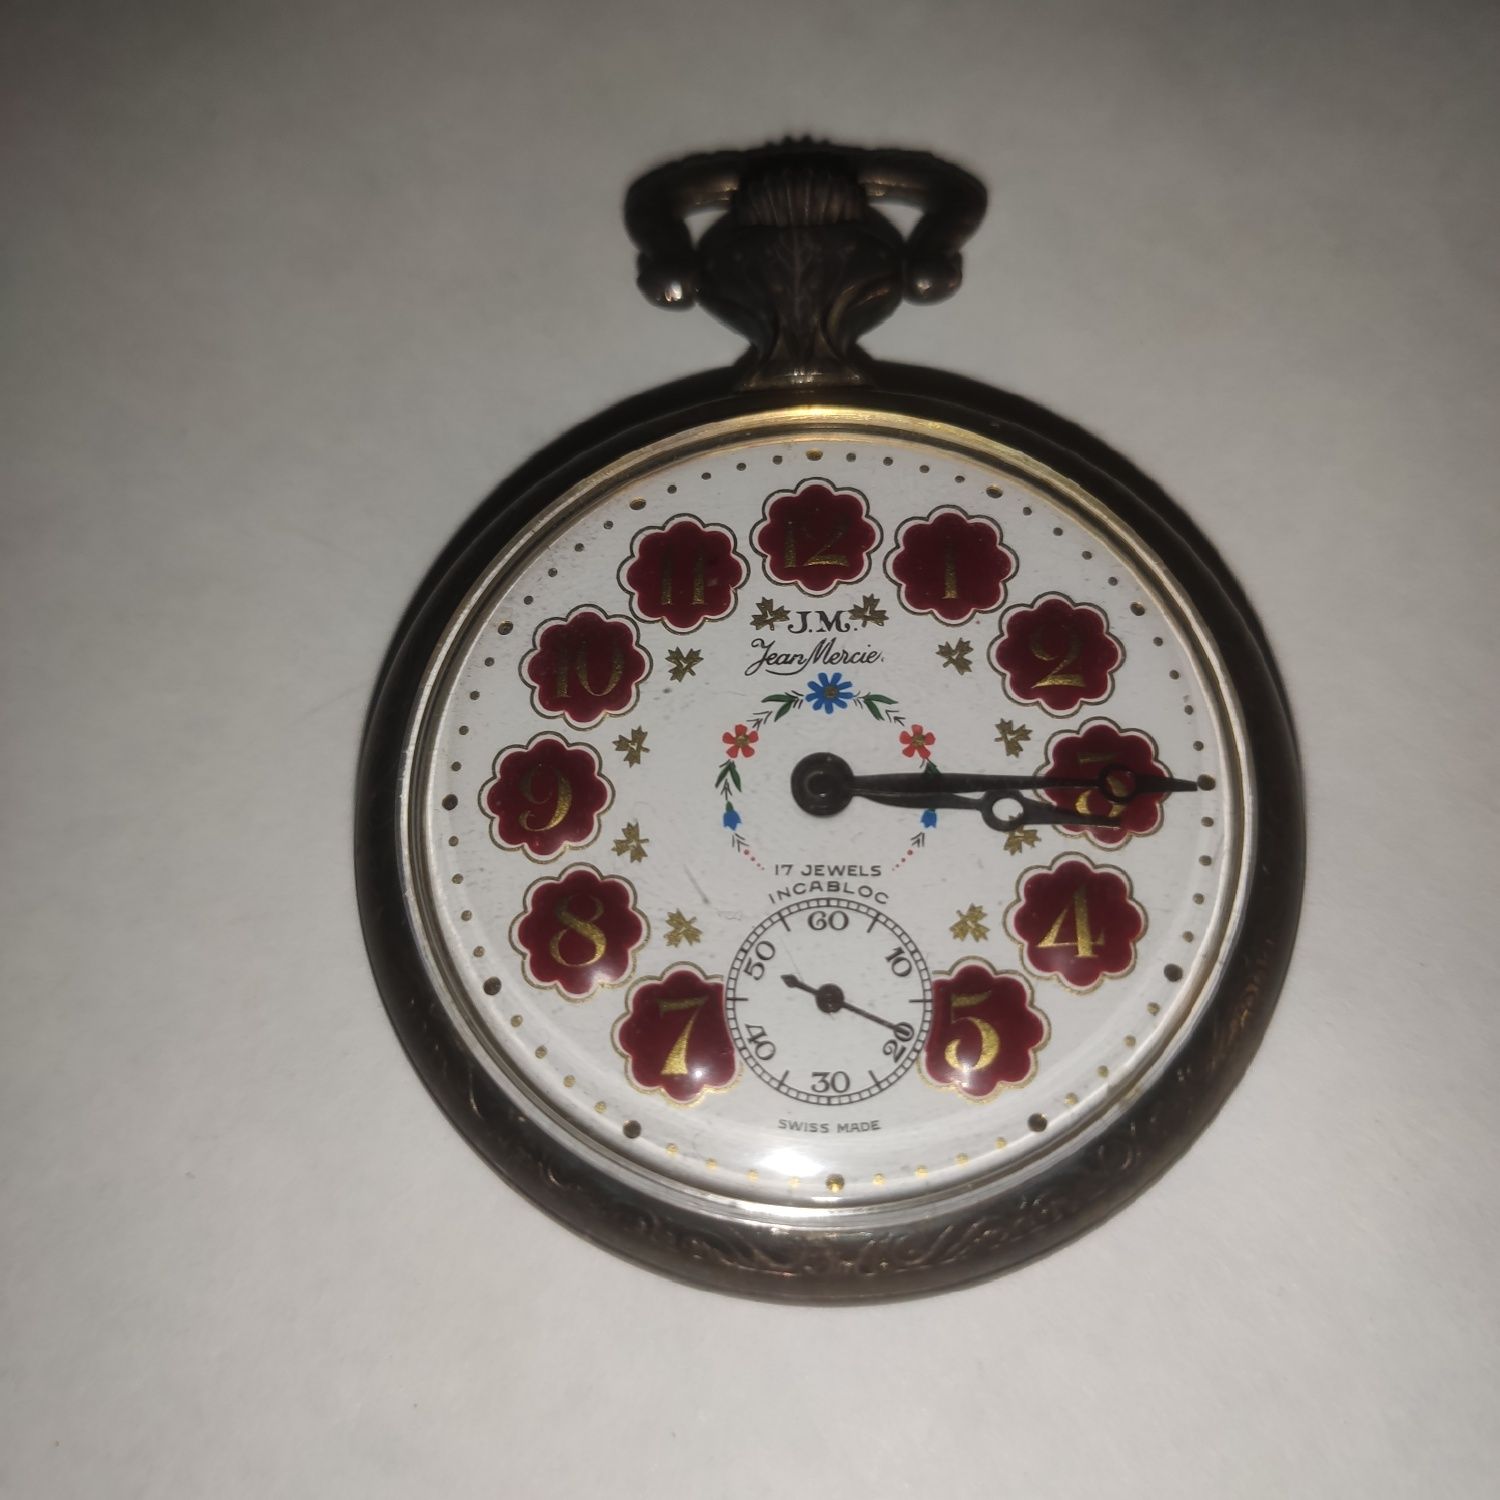 Relógio de Bolso em Prata Jean Mercier - 17 Jewels/17 Rubis